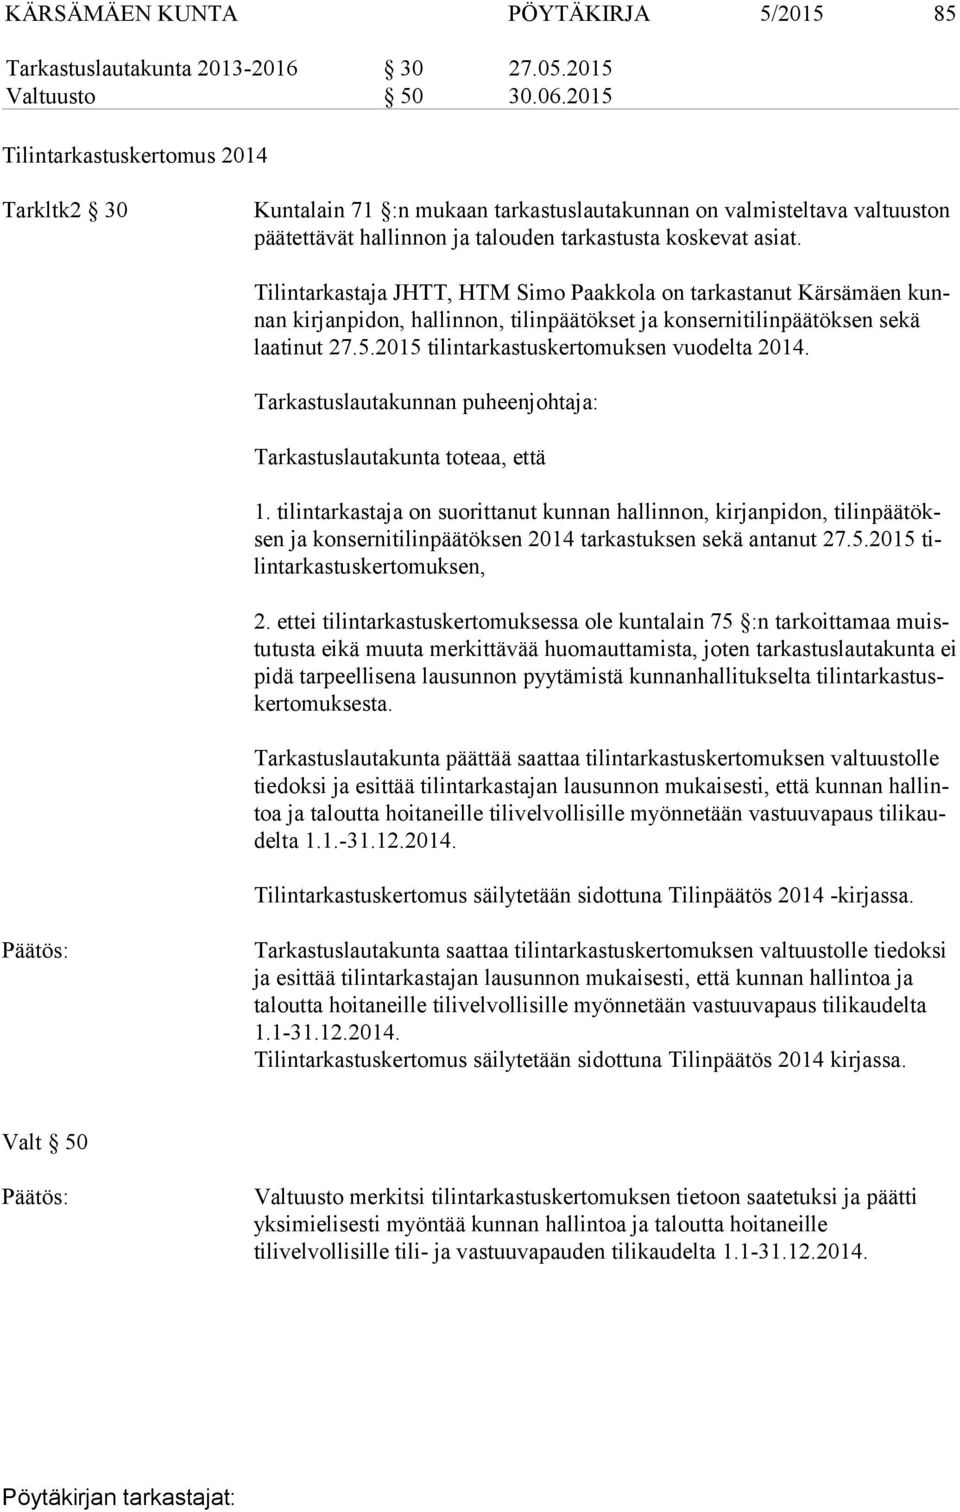 Tilintarkastaja JHTT, HTM Simo Paakkola on tarkastanut Kärsämäen kunnan kirjanpidon, hallinnon, tilinpäätökset ja konsernitilinpäätöksen sekä laa ti nut 27.5.